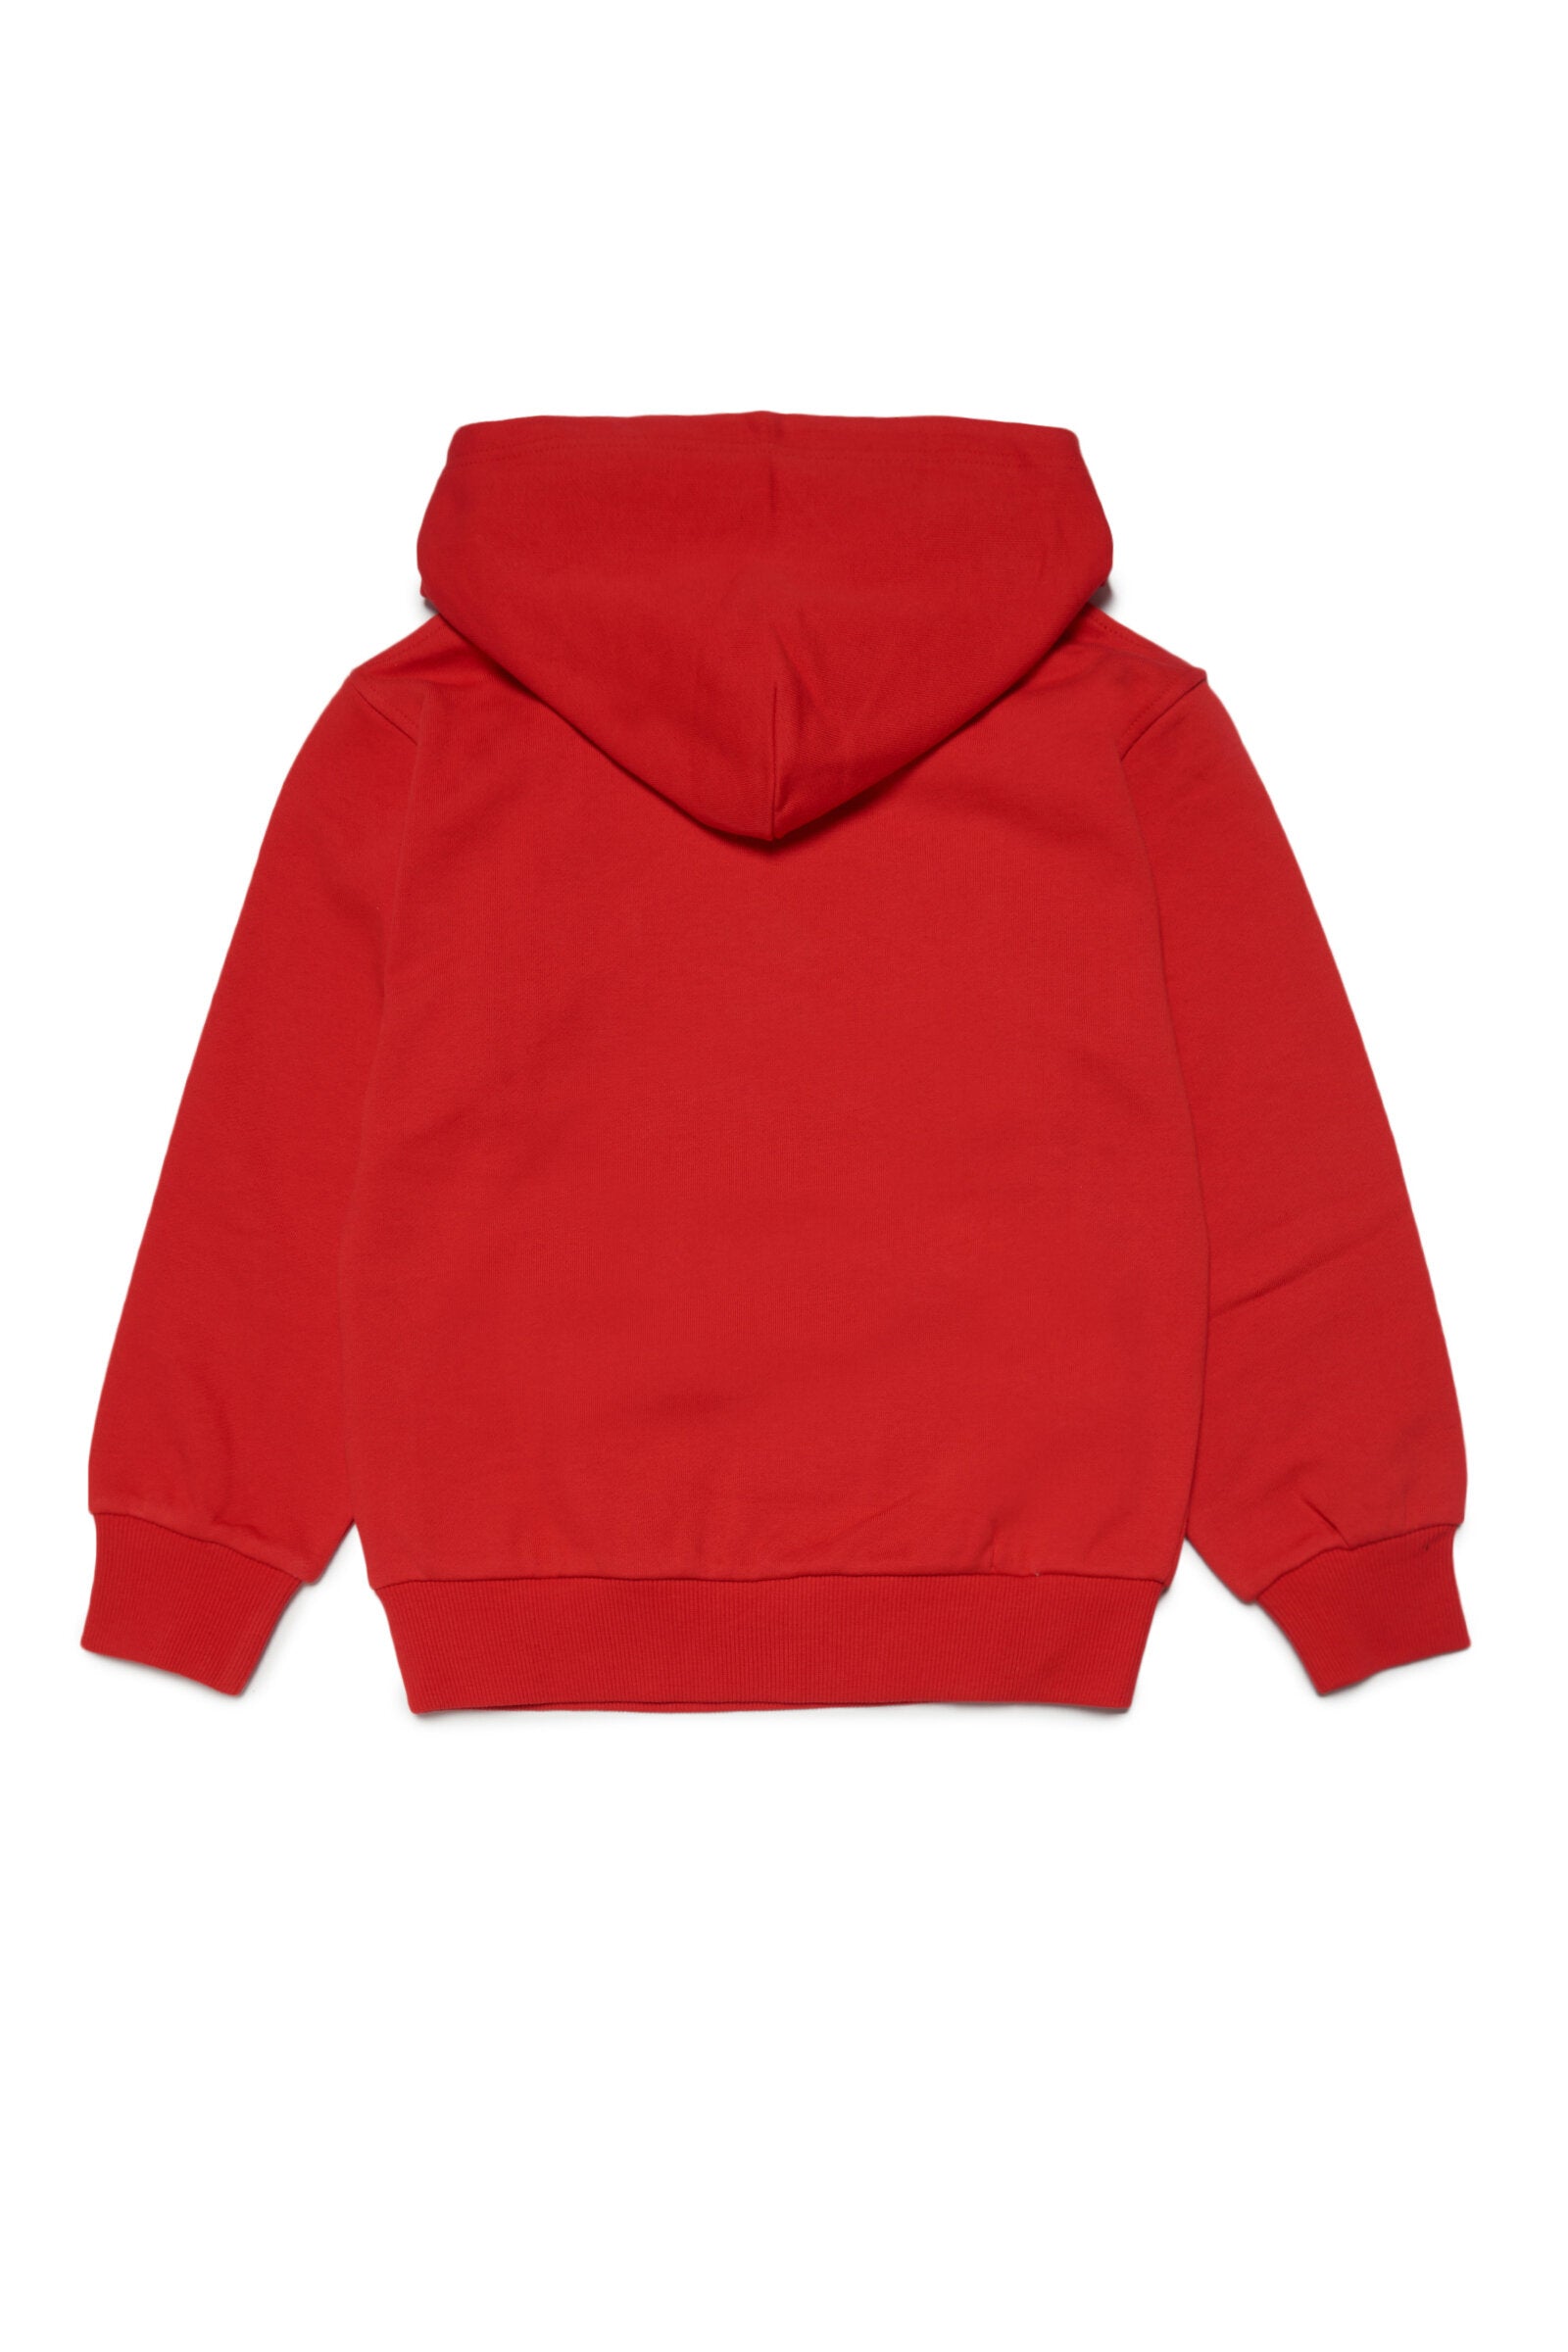 Sudadera roja con capucha y logotipo con efecto acuarela